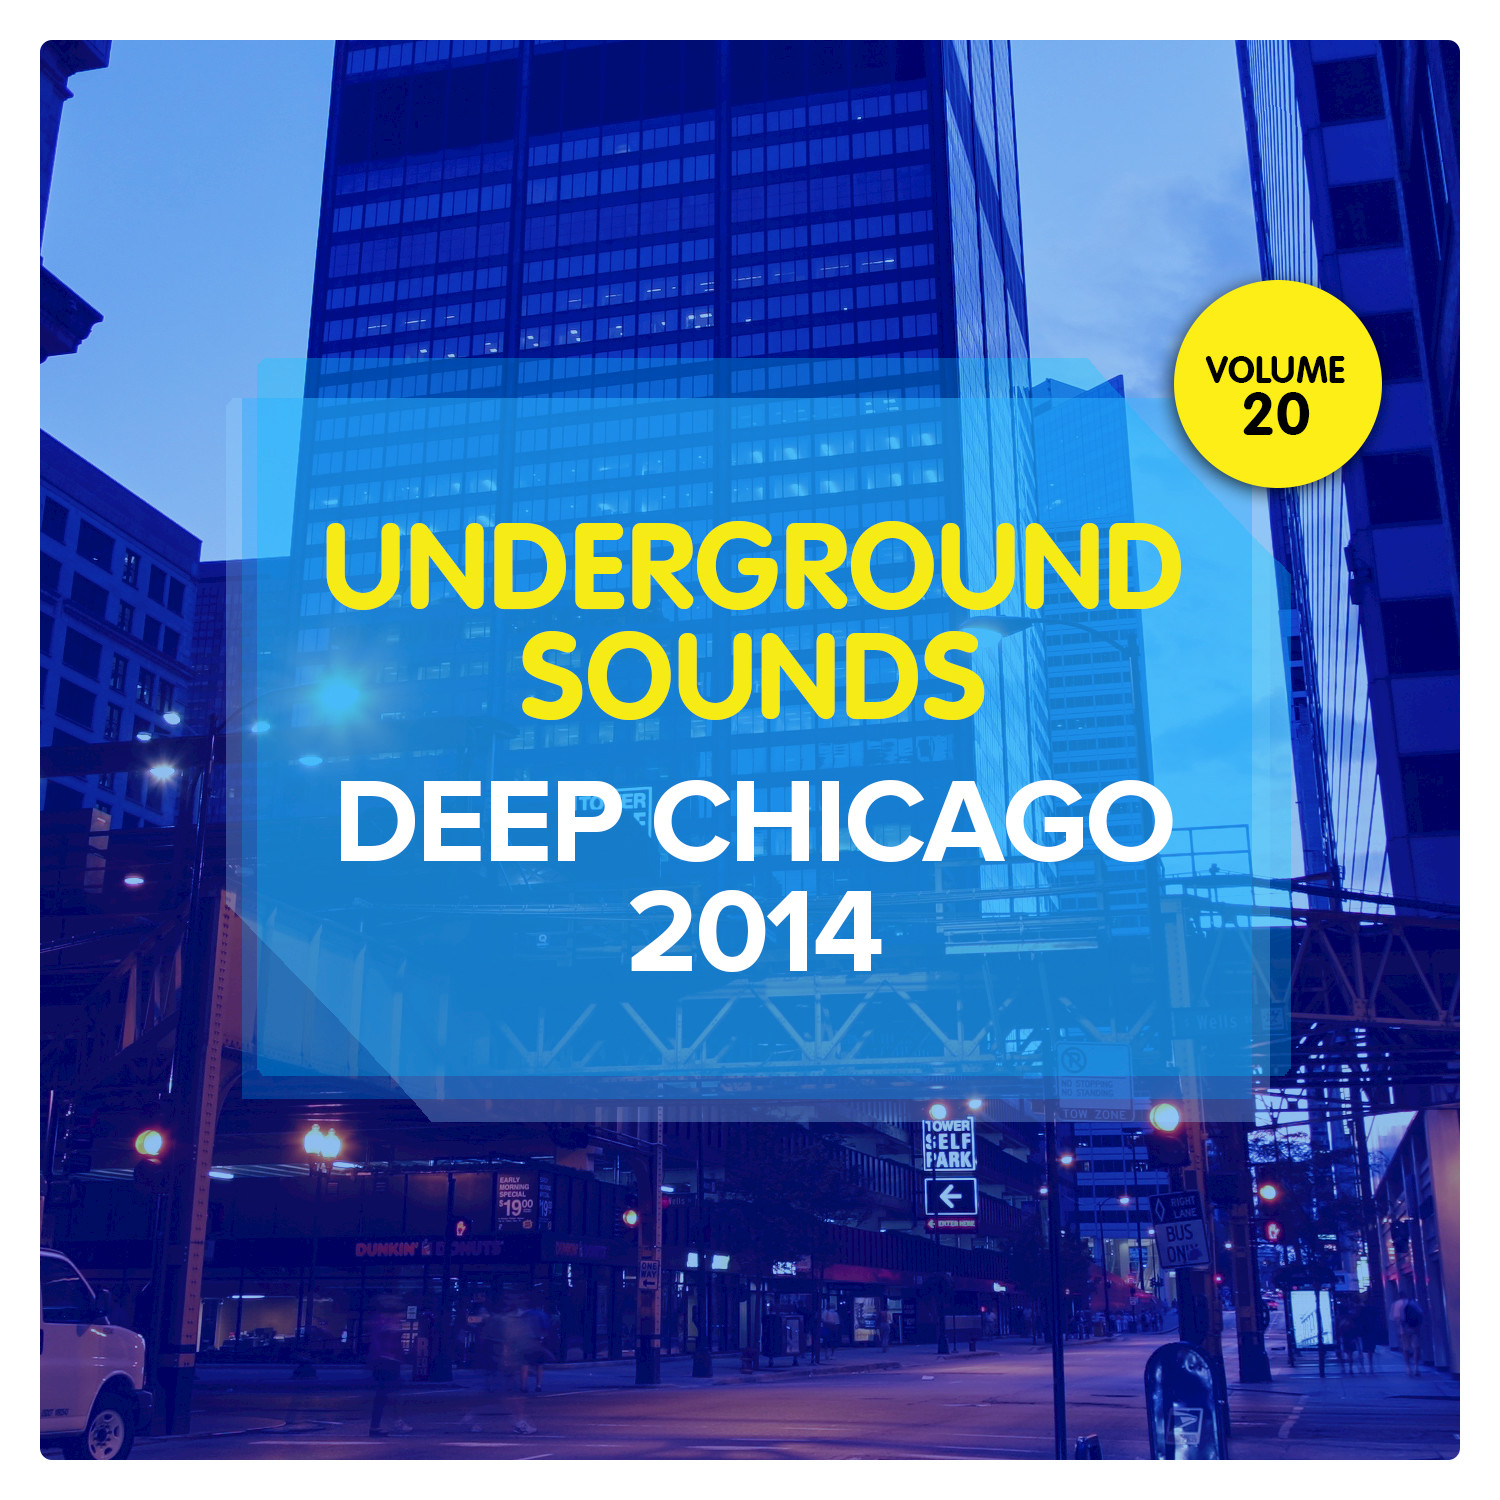 Deep Chicago 2014 - Underground Sounds, Vol. 20